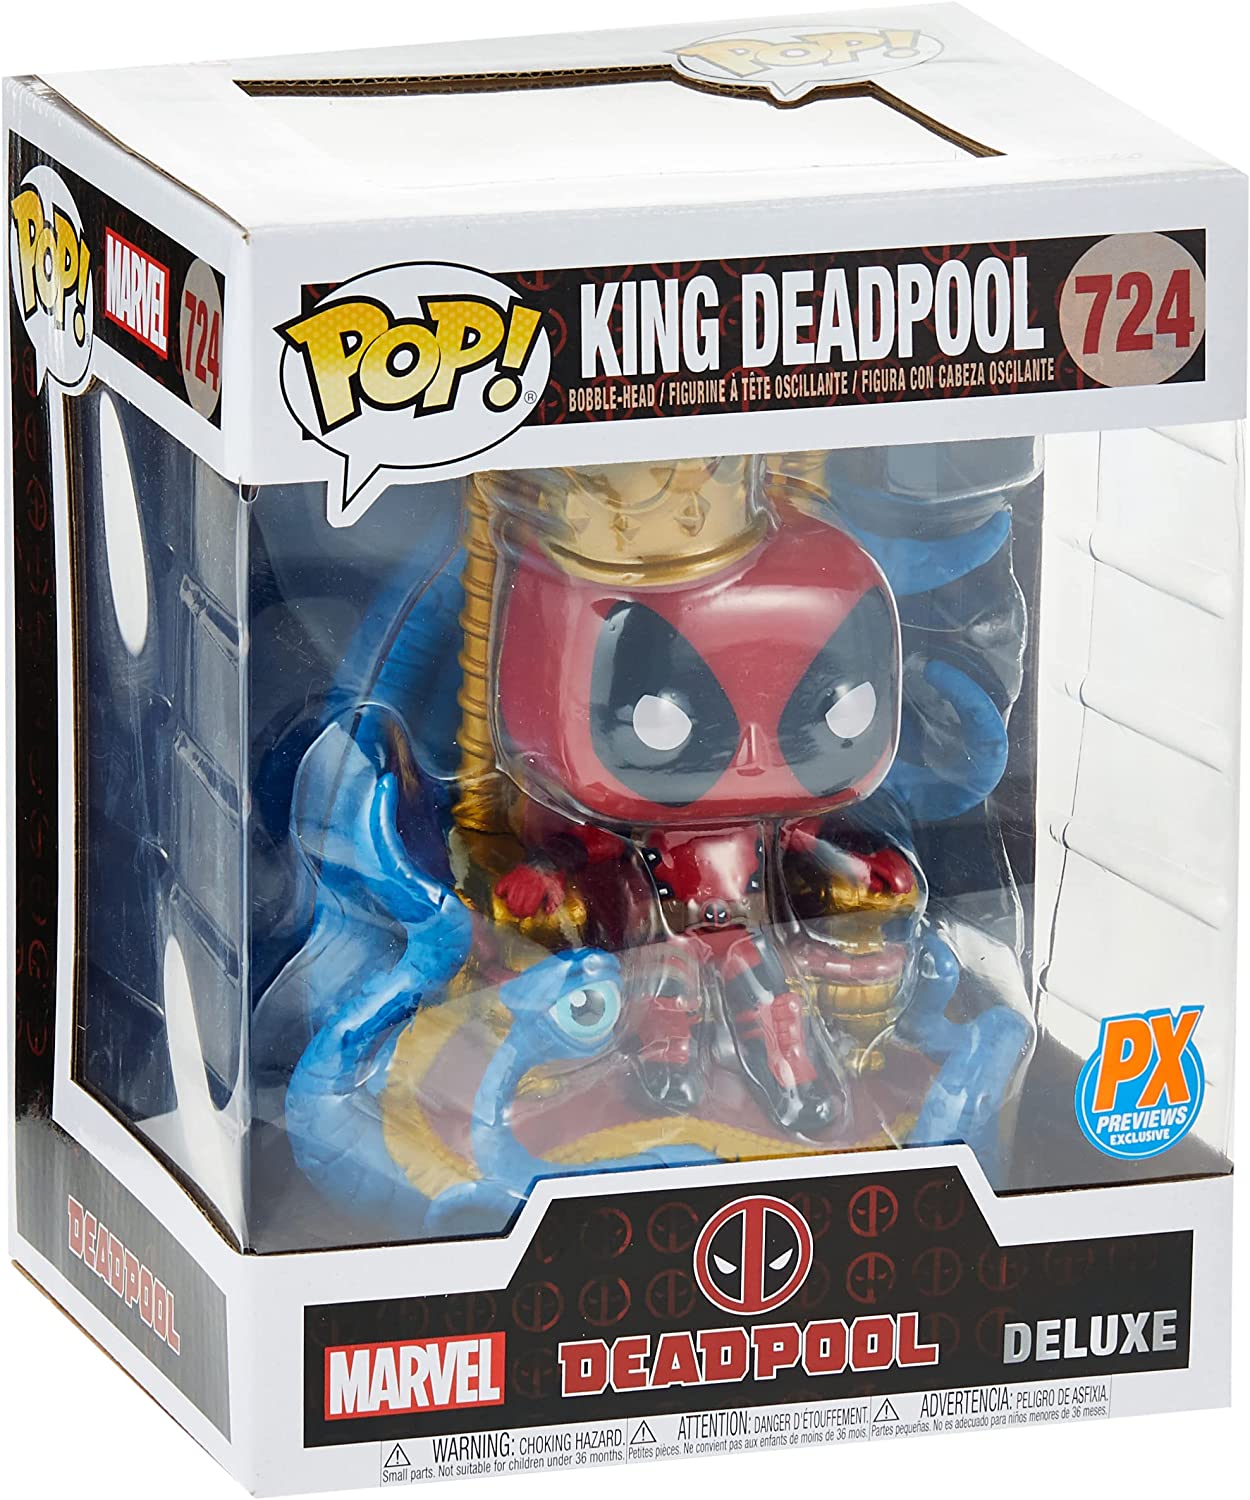 Фигурка Pop! Deluxe Marvel Heroes King Deadpool on Throne Vinyl Figure фигурка funko pop deluxe evil queen on throne 50270